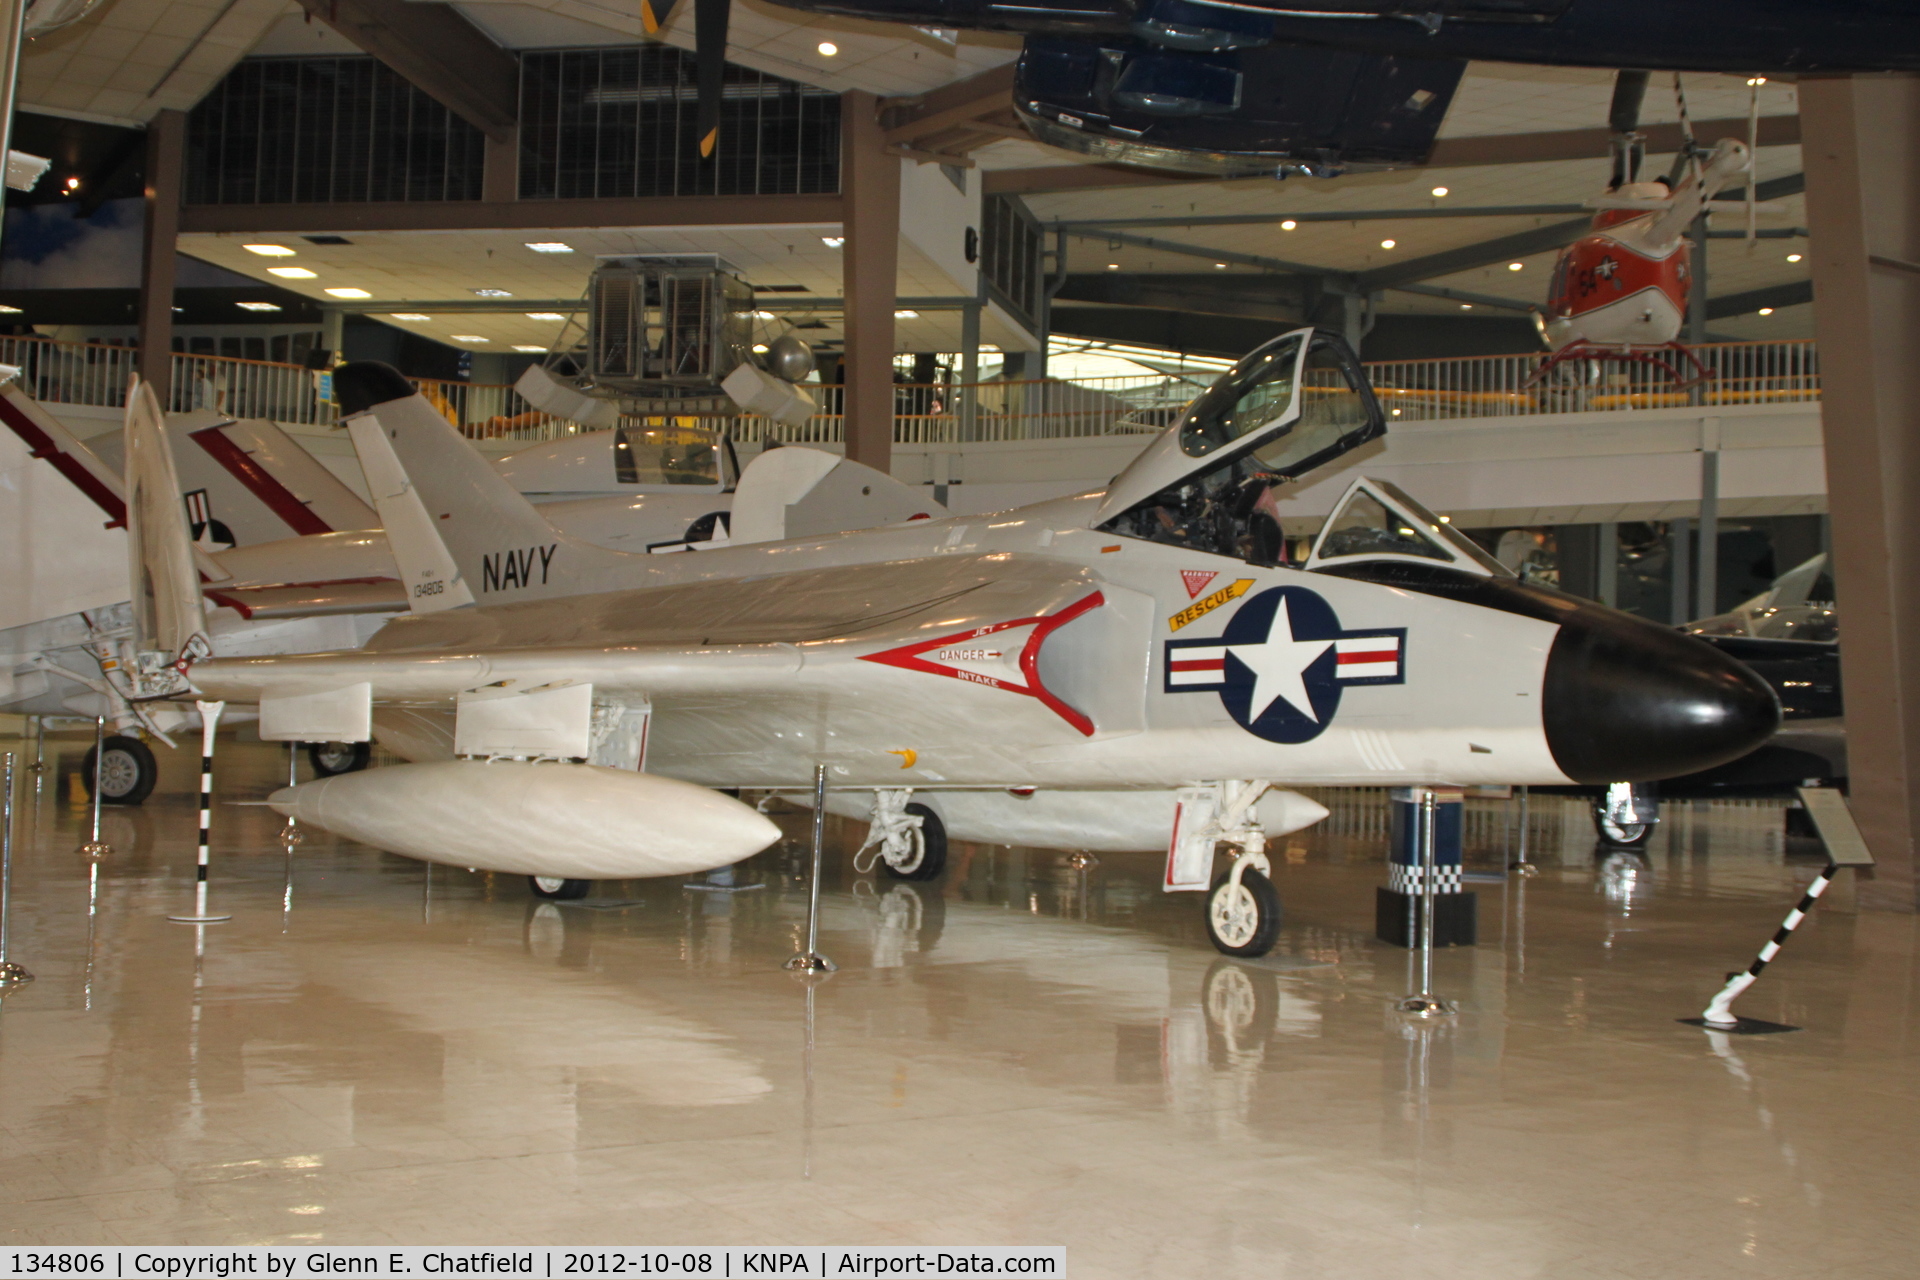 134806, 1957 Douglas F-6A Skyray C/N 10400, Naval Aviation Museum